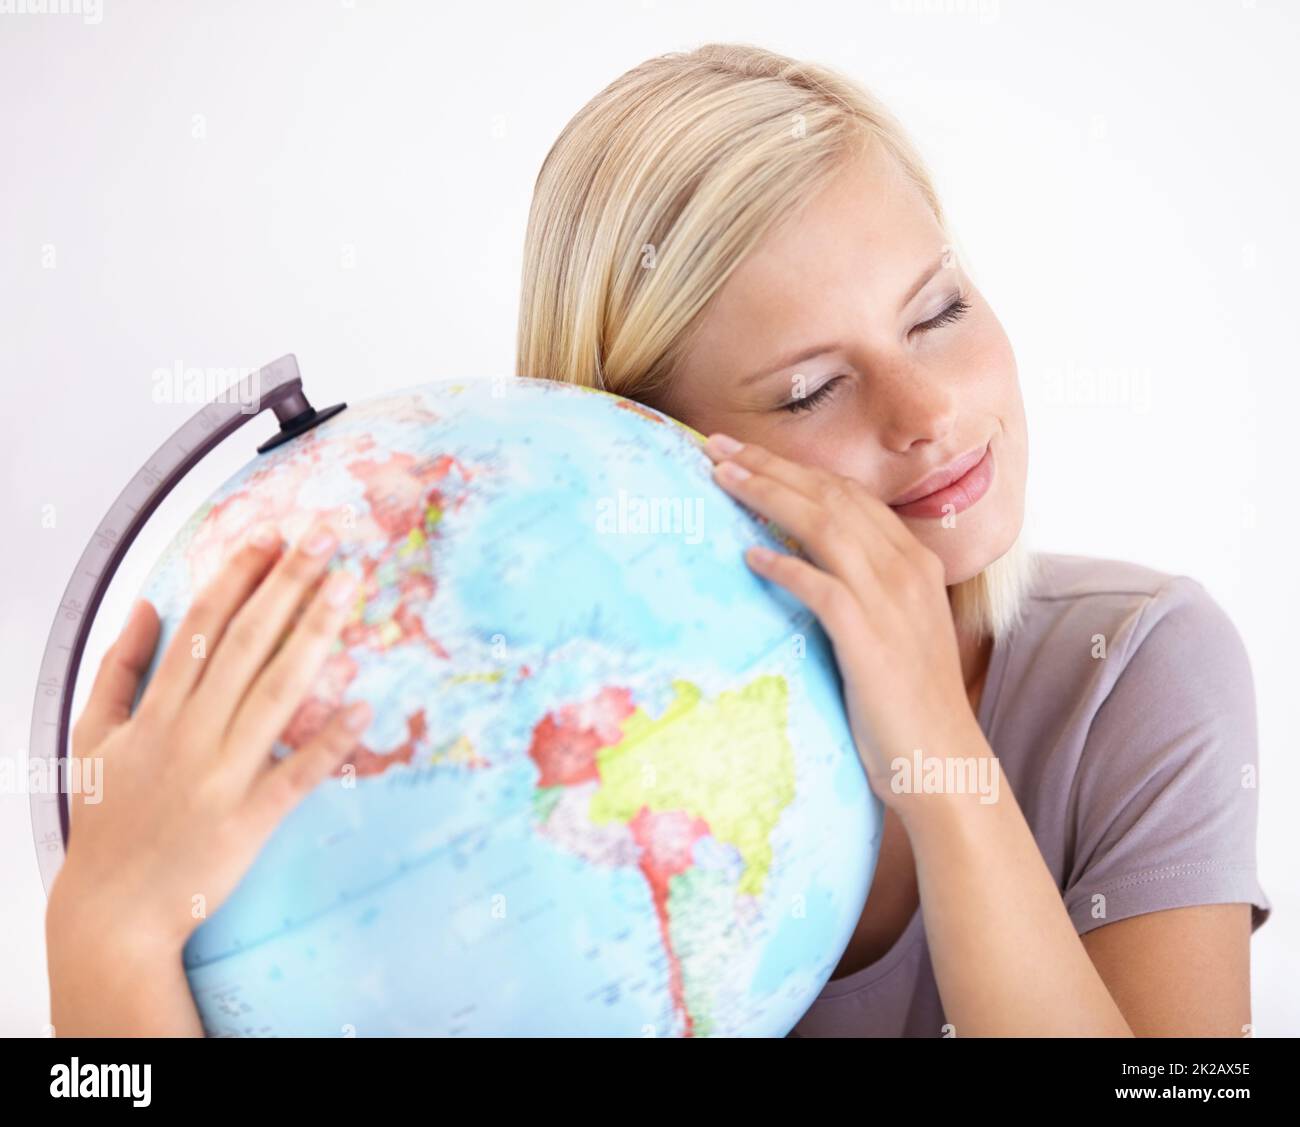 Oh Welt, Ich liebe dich. Eine hübsche junge Frau umarmt liebevoll einen Globus der Erde. Stockfoto